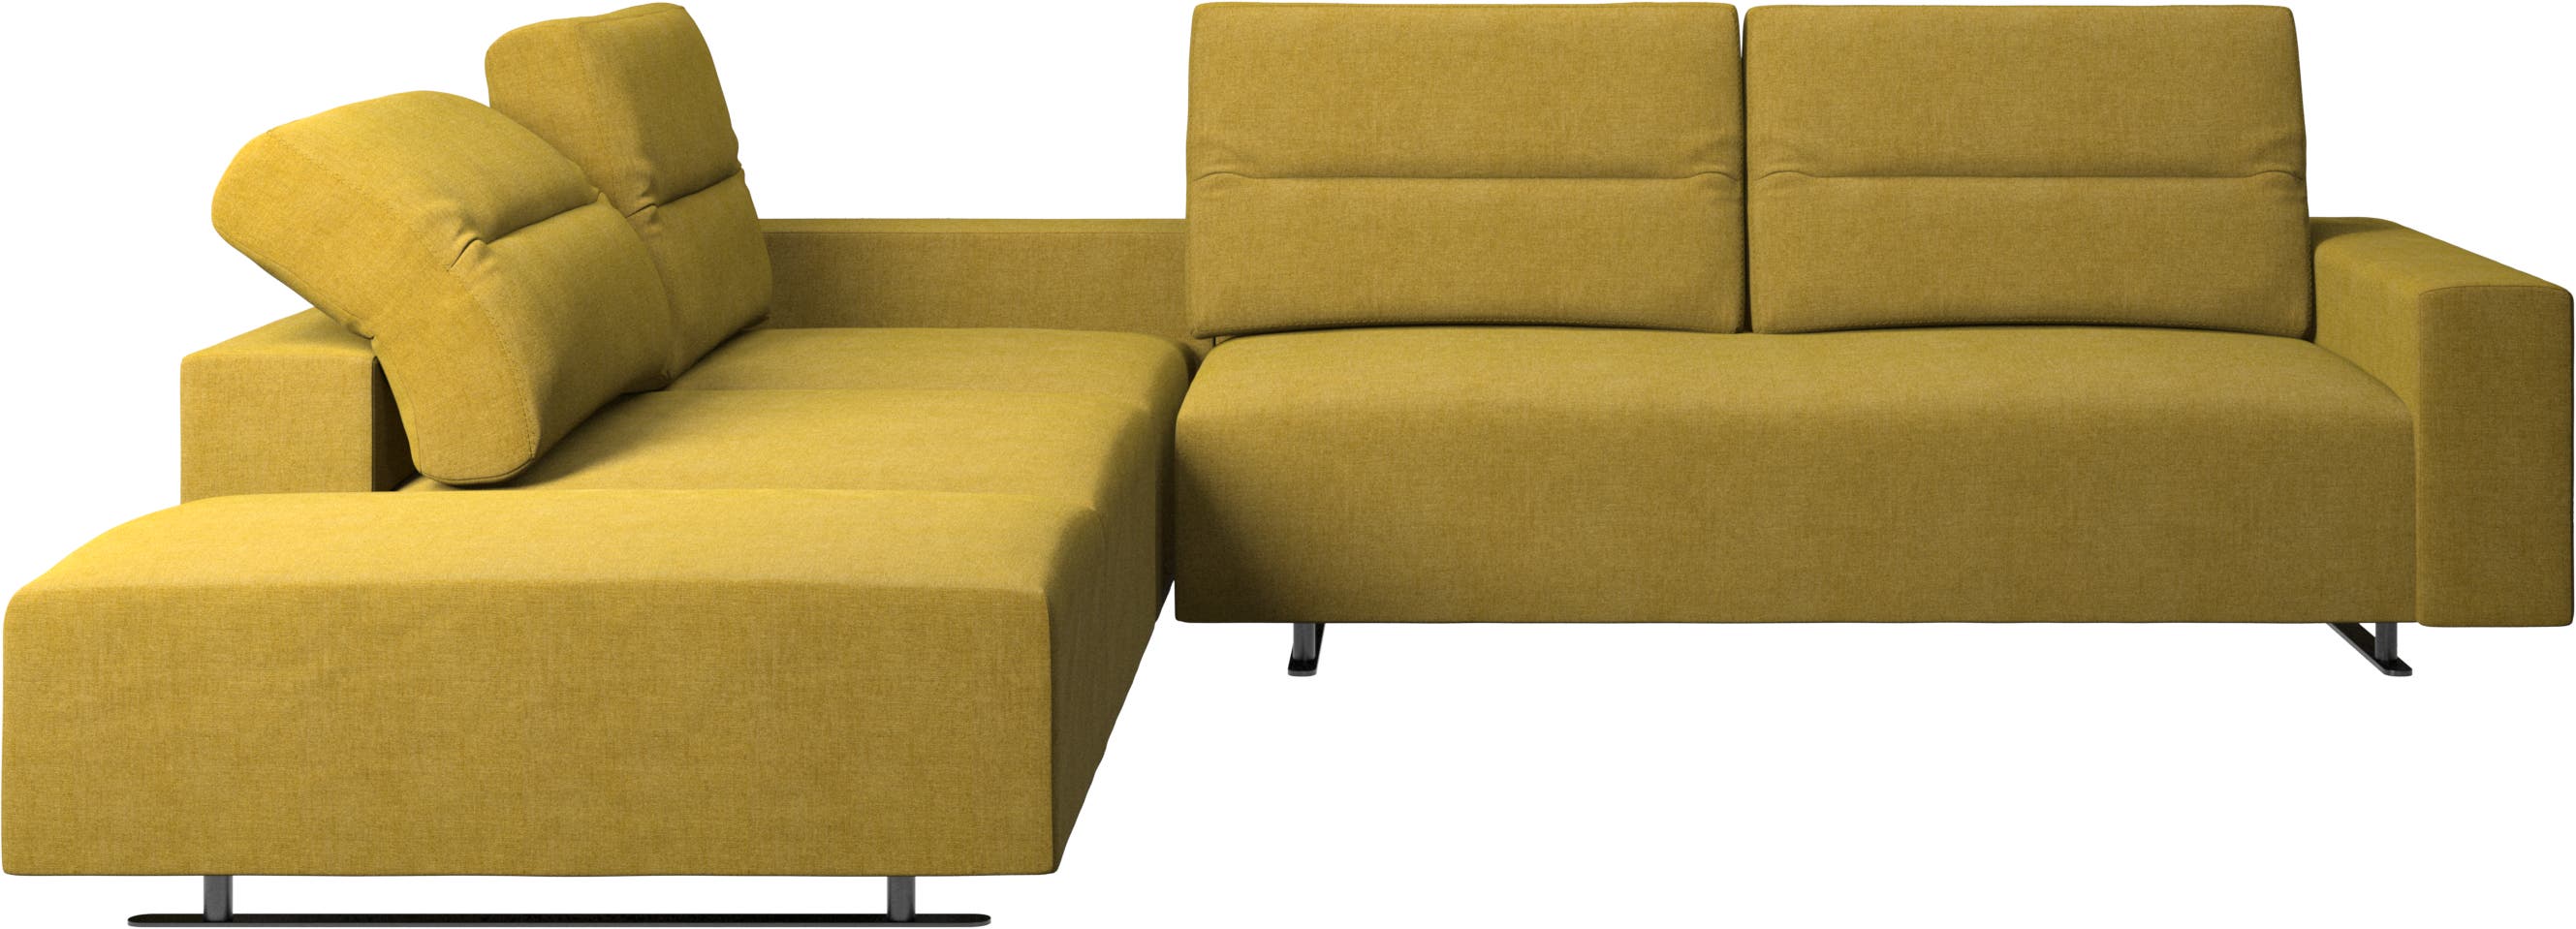 Γωνιακός καναπές Hampton με ρυθμιζόμενη πλάτη και μονάδα lounging